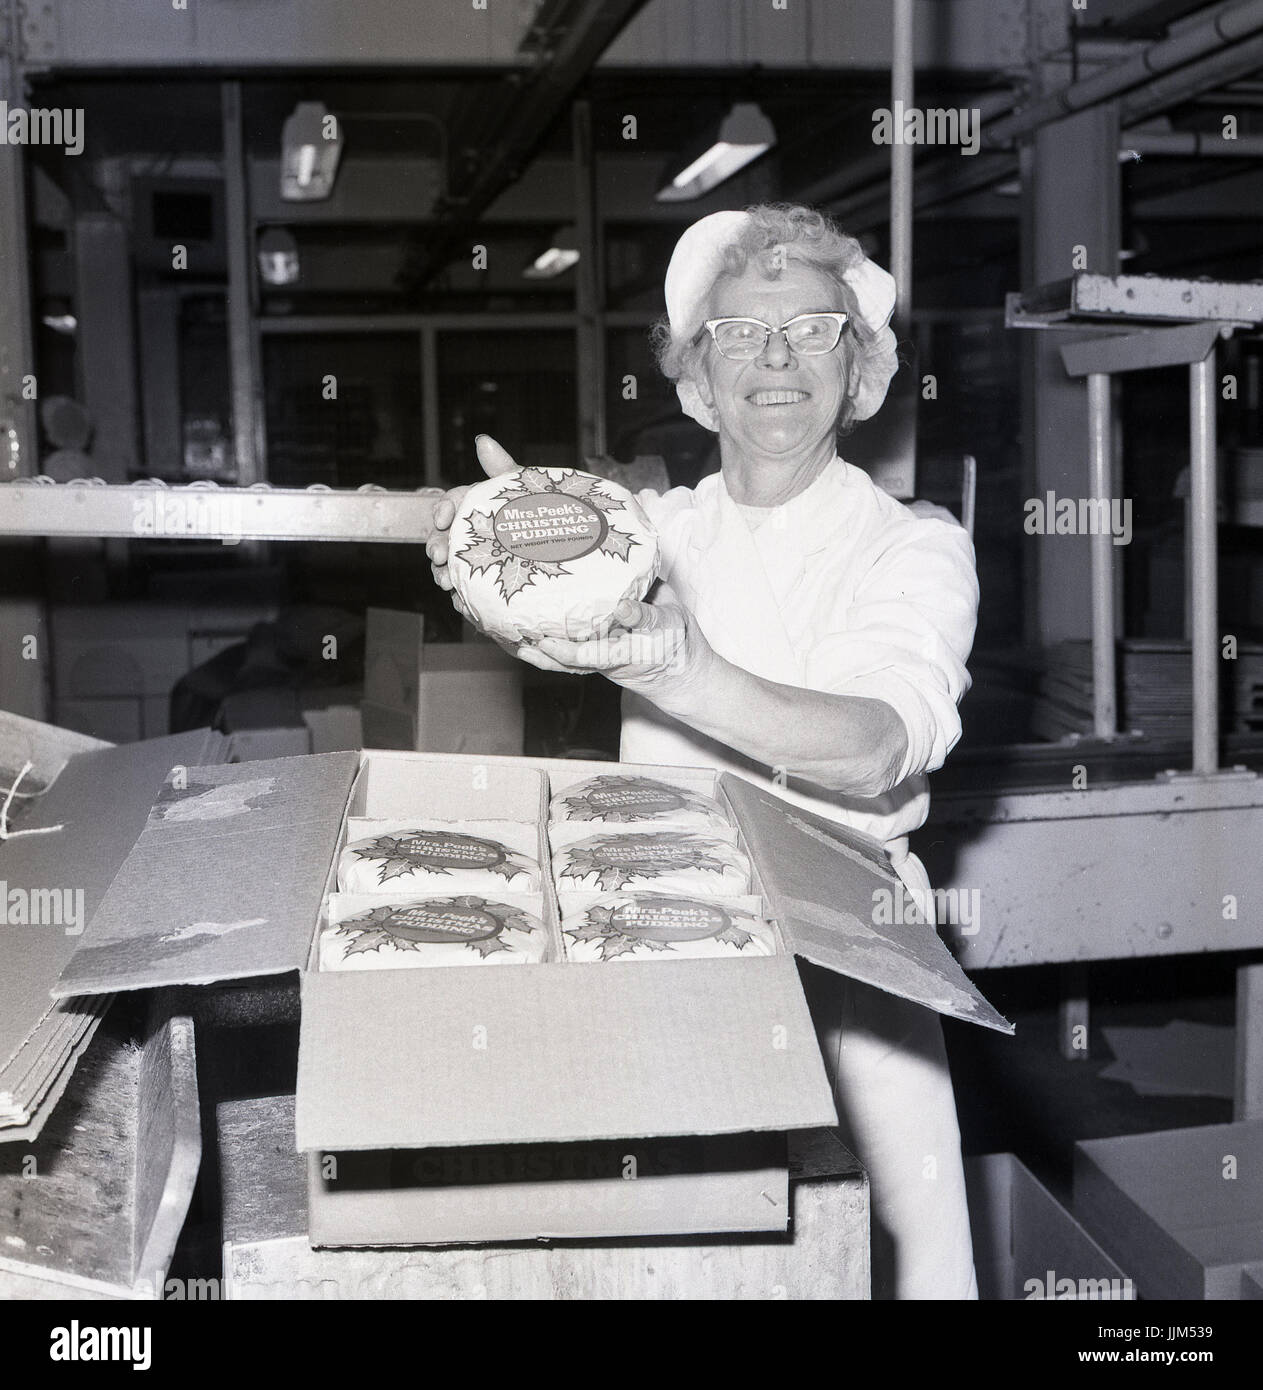 Arbeitnehmer bei der Peek-Frean Produktionsunternehmen in Bermondsey, Süd-London, England, der 1970er Jahre berühmt Frau Peek vorgekochte Christmas Puddings produziert, während WW1. Stockfoto